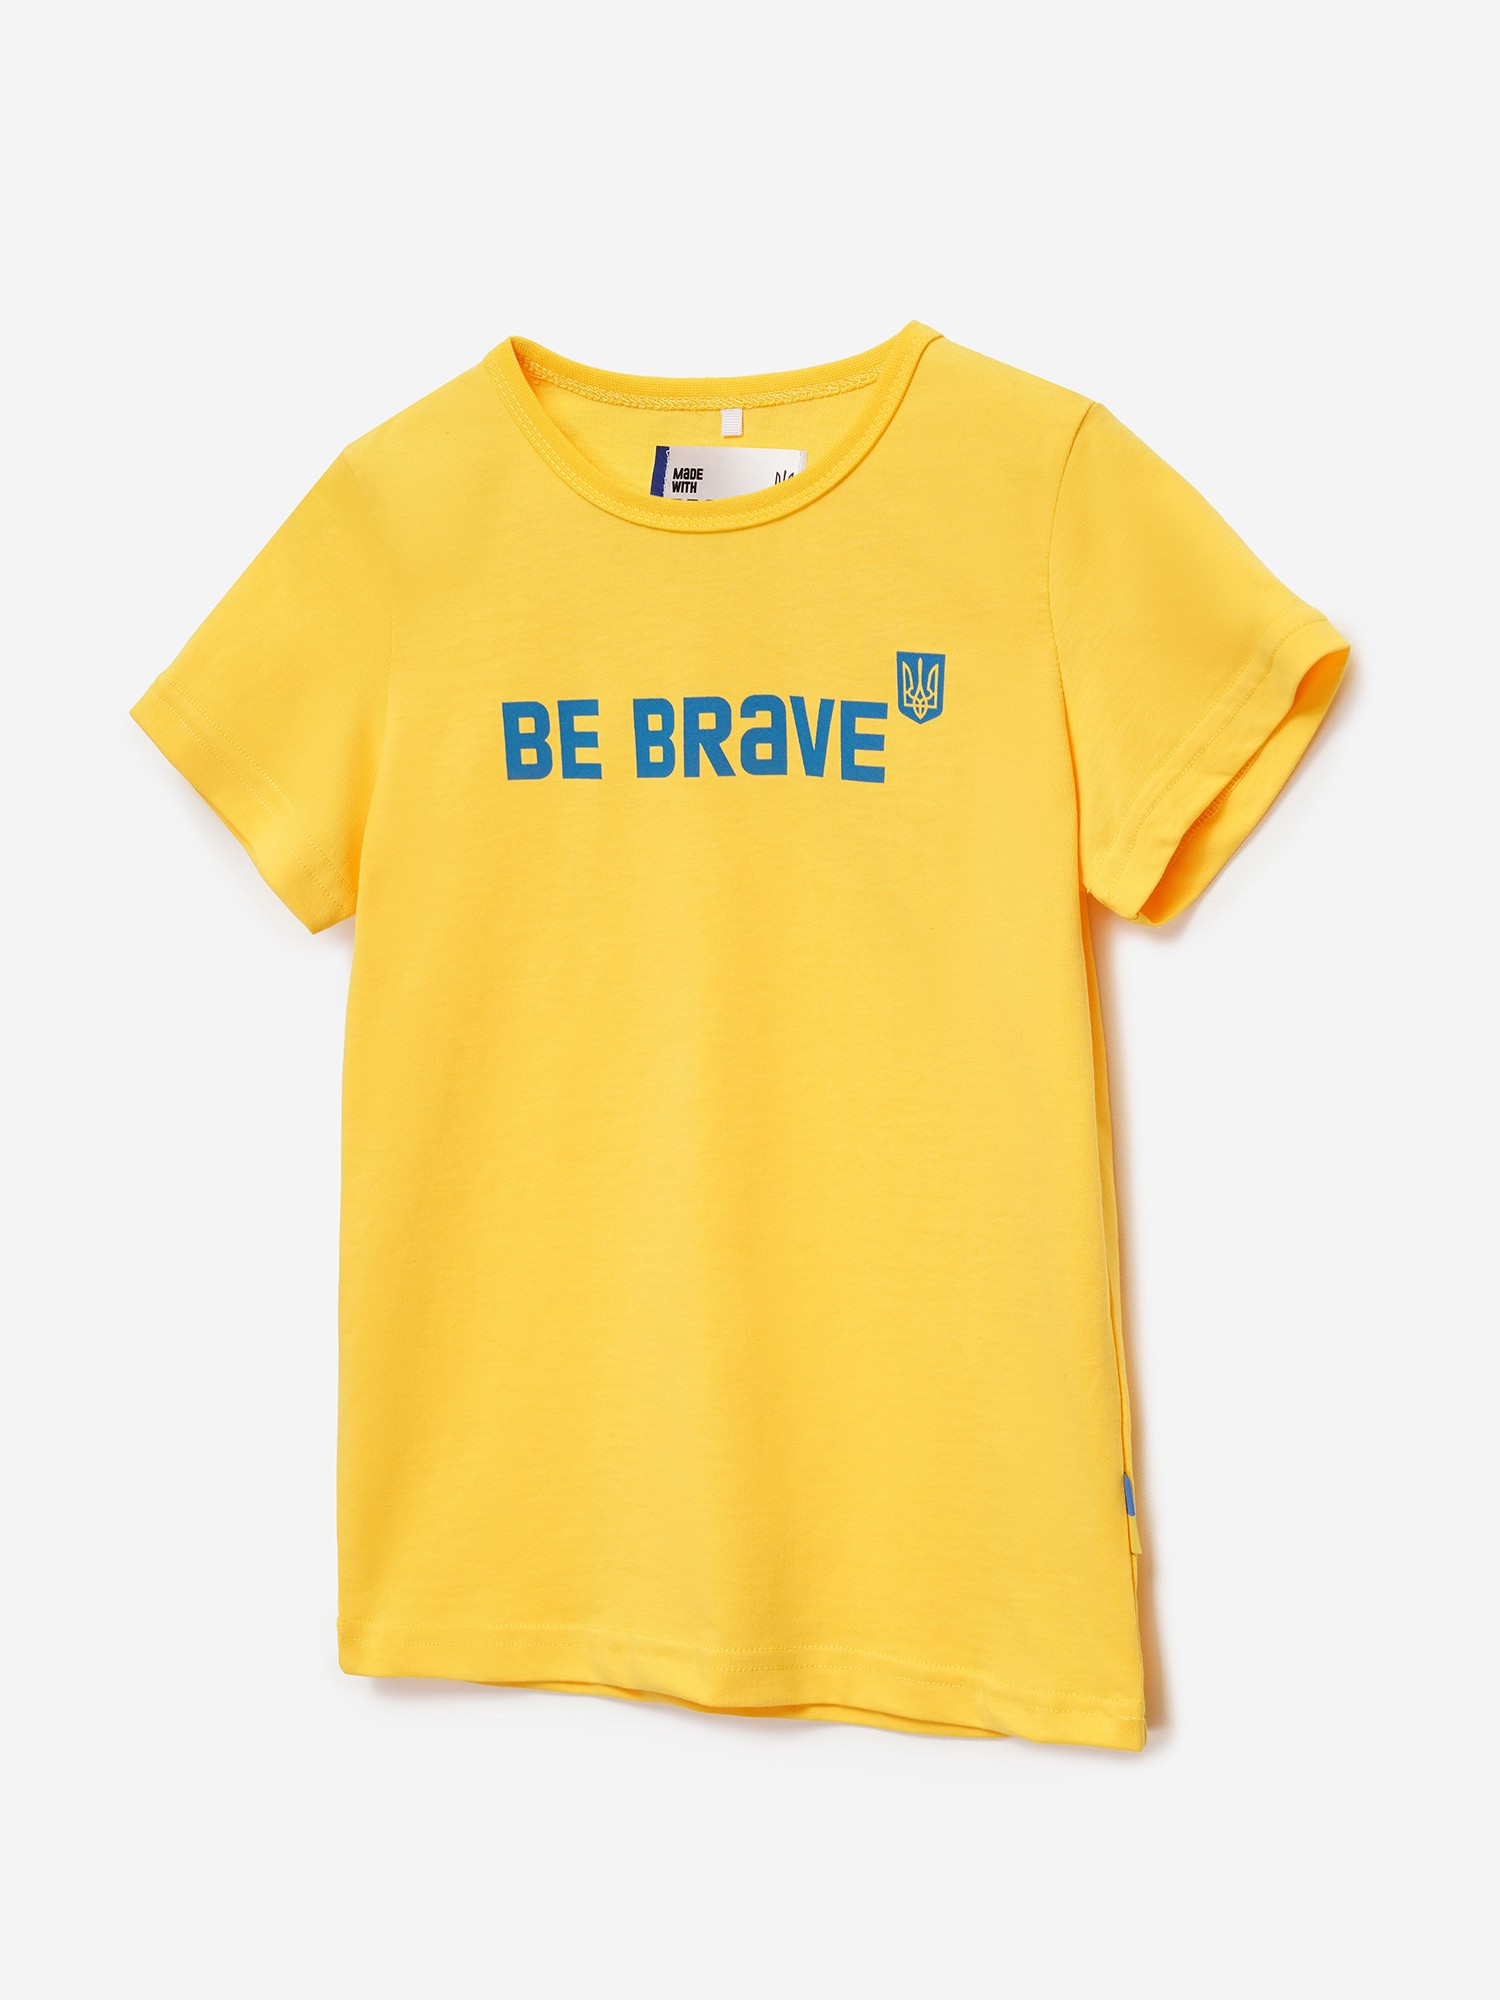 BRAVERY ORIGINAL Yellow Kids T-shirt